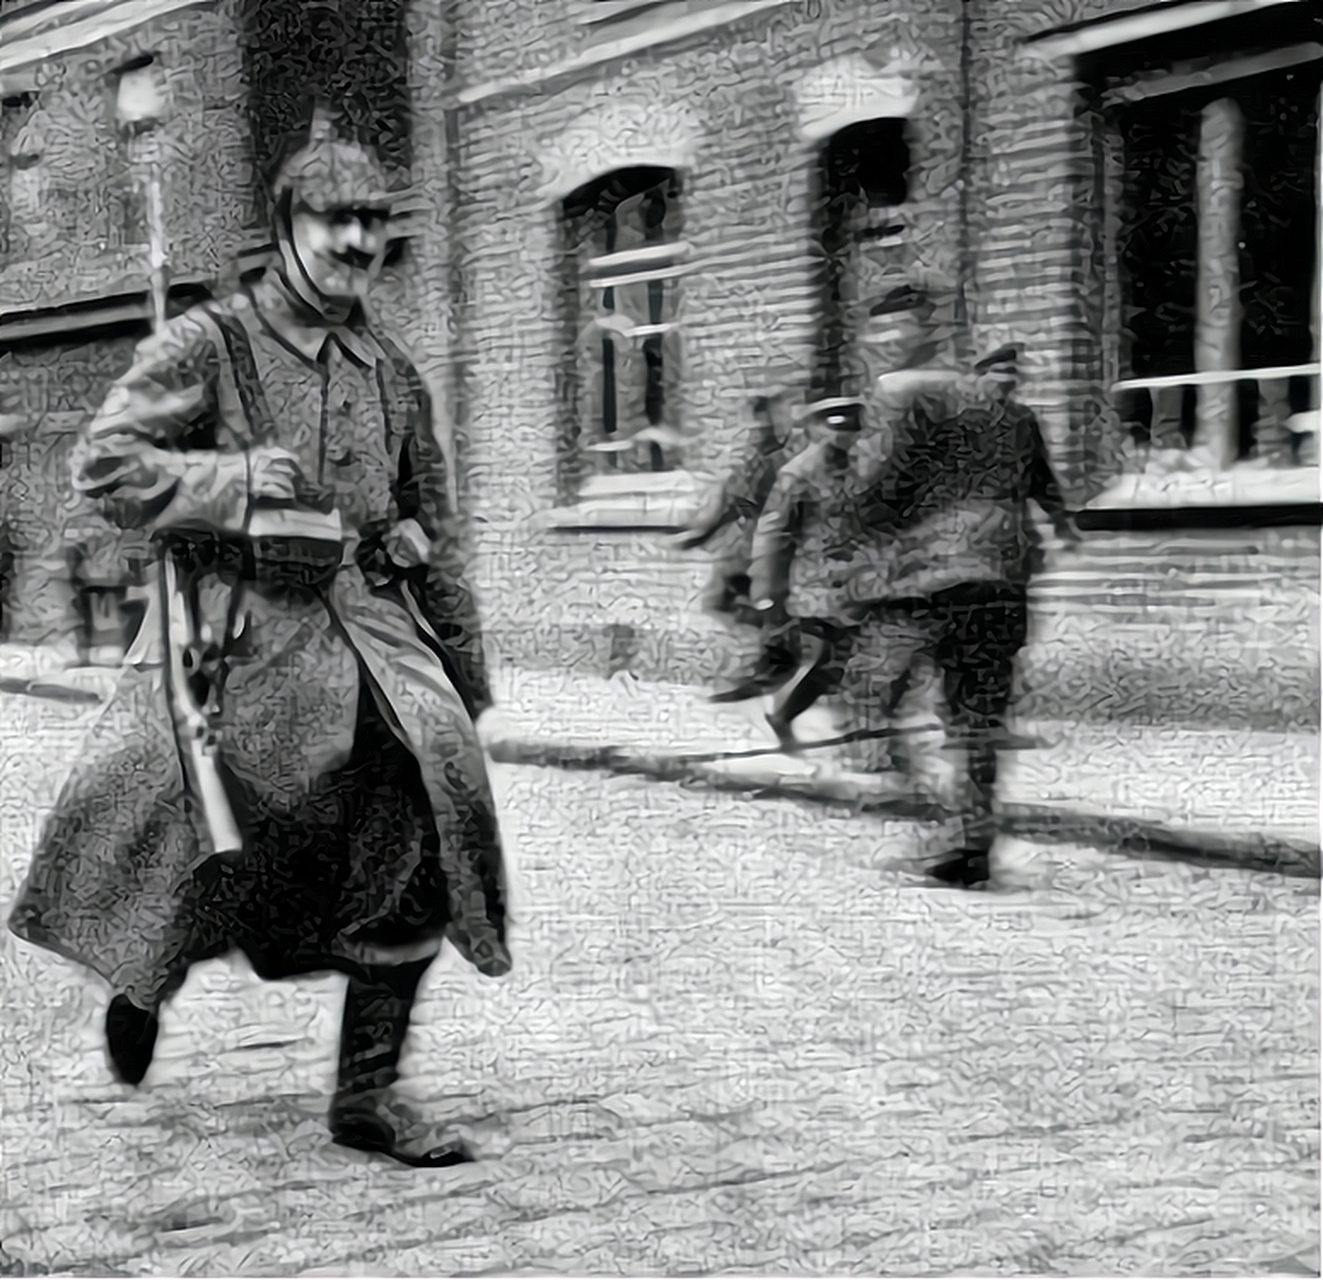 奥古斯特·冯·马肯森,他是第一次世界大战期间的德国陆军元帅,这张照